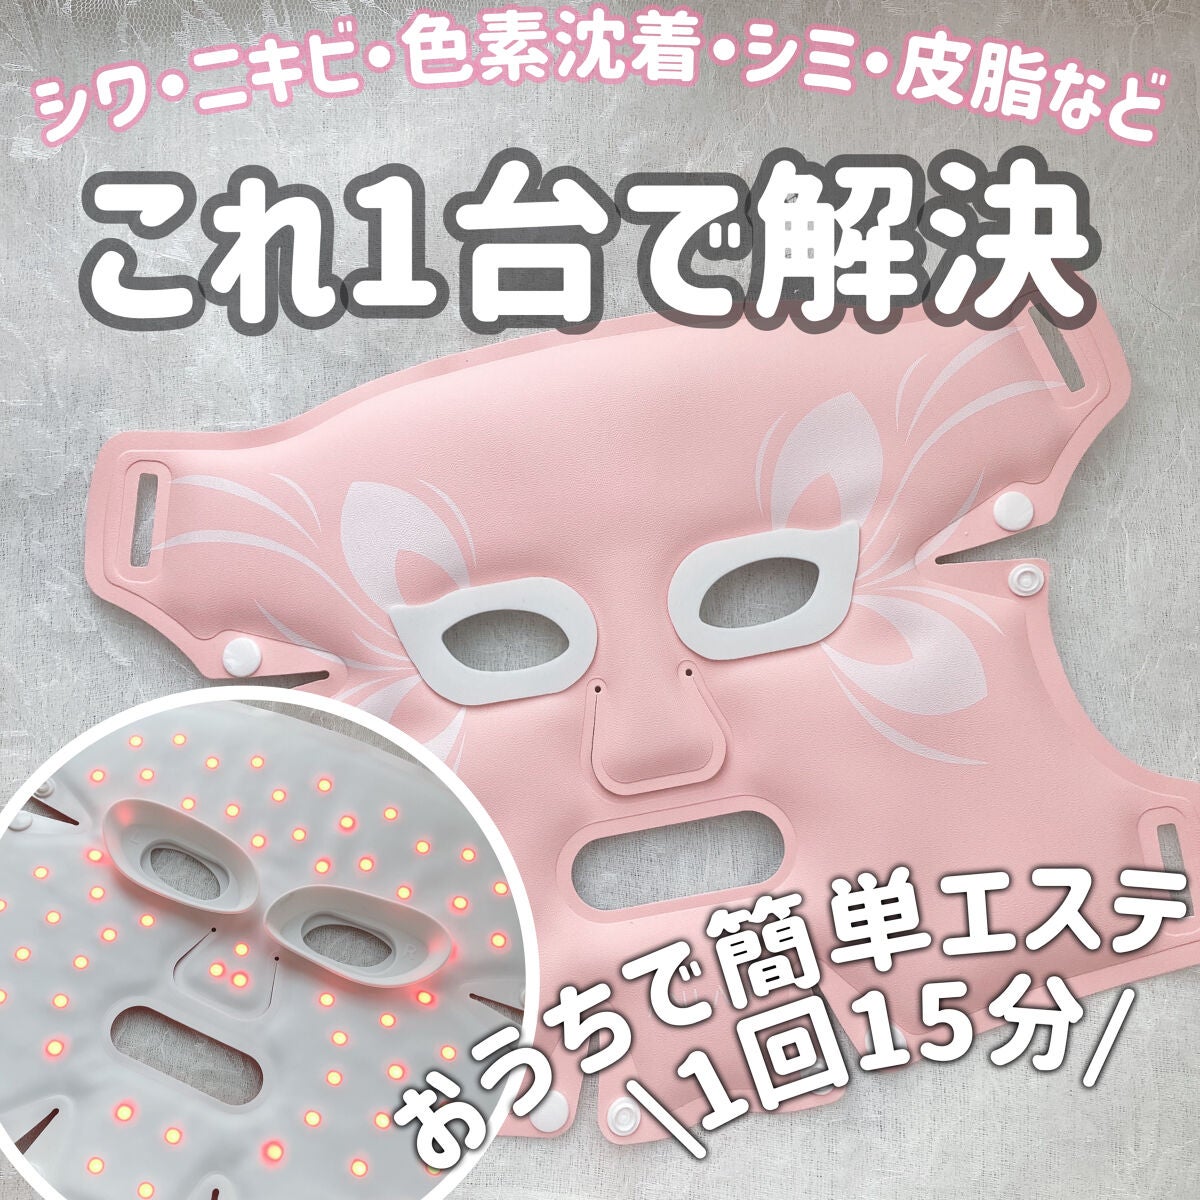 【新品・未使用】ANLAN（アンラン）LED美顔器マスク